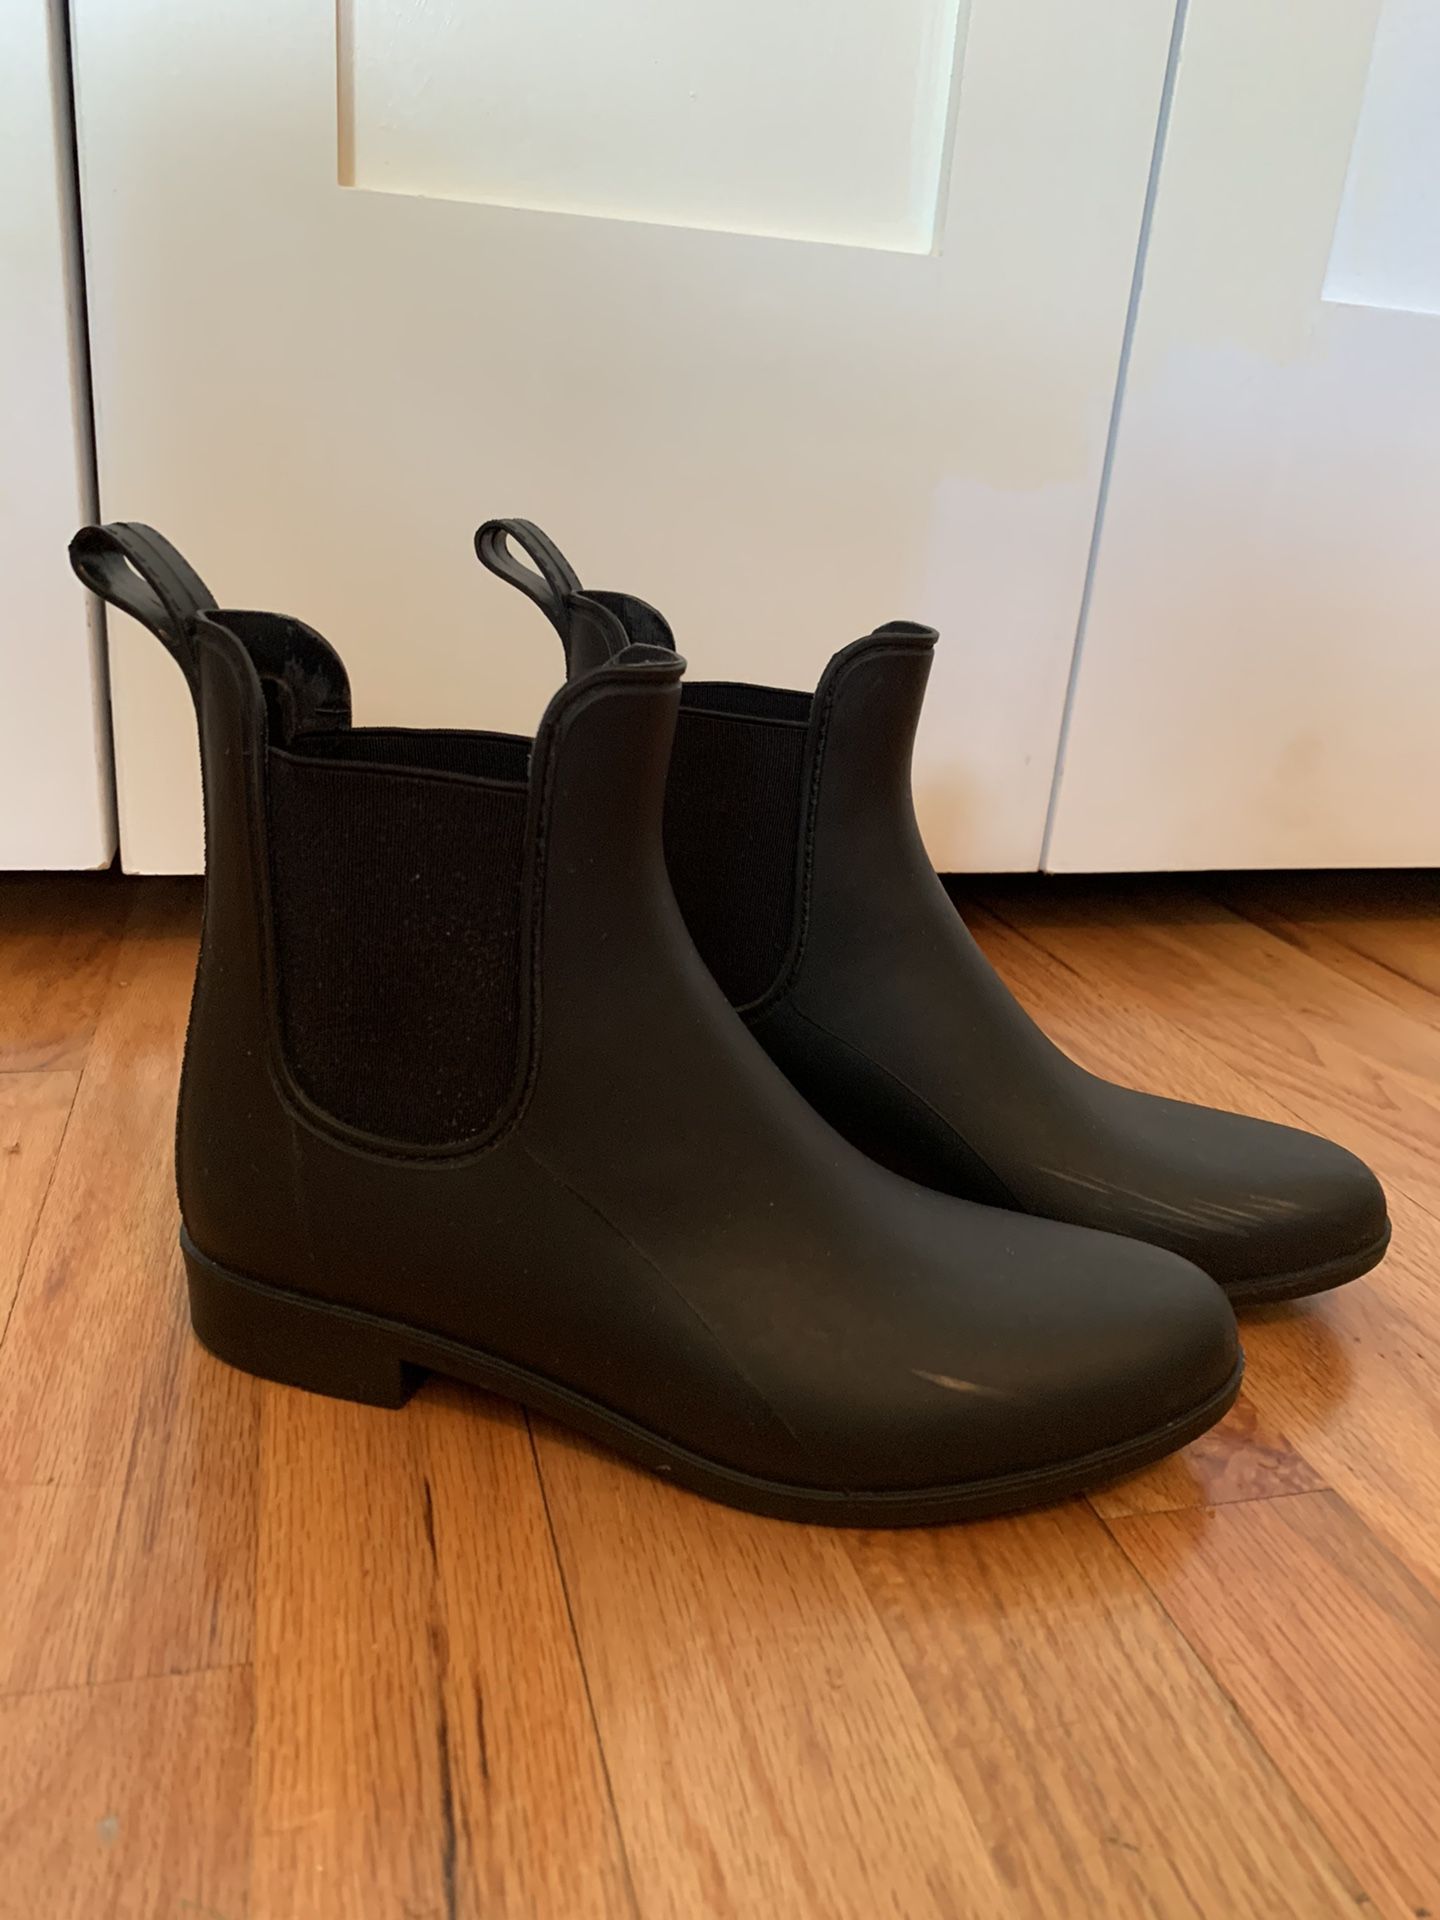 J Crew Chelsea matte rain boots size 7